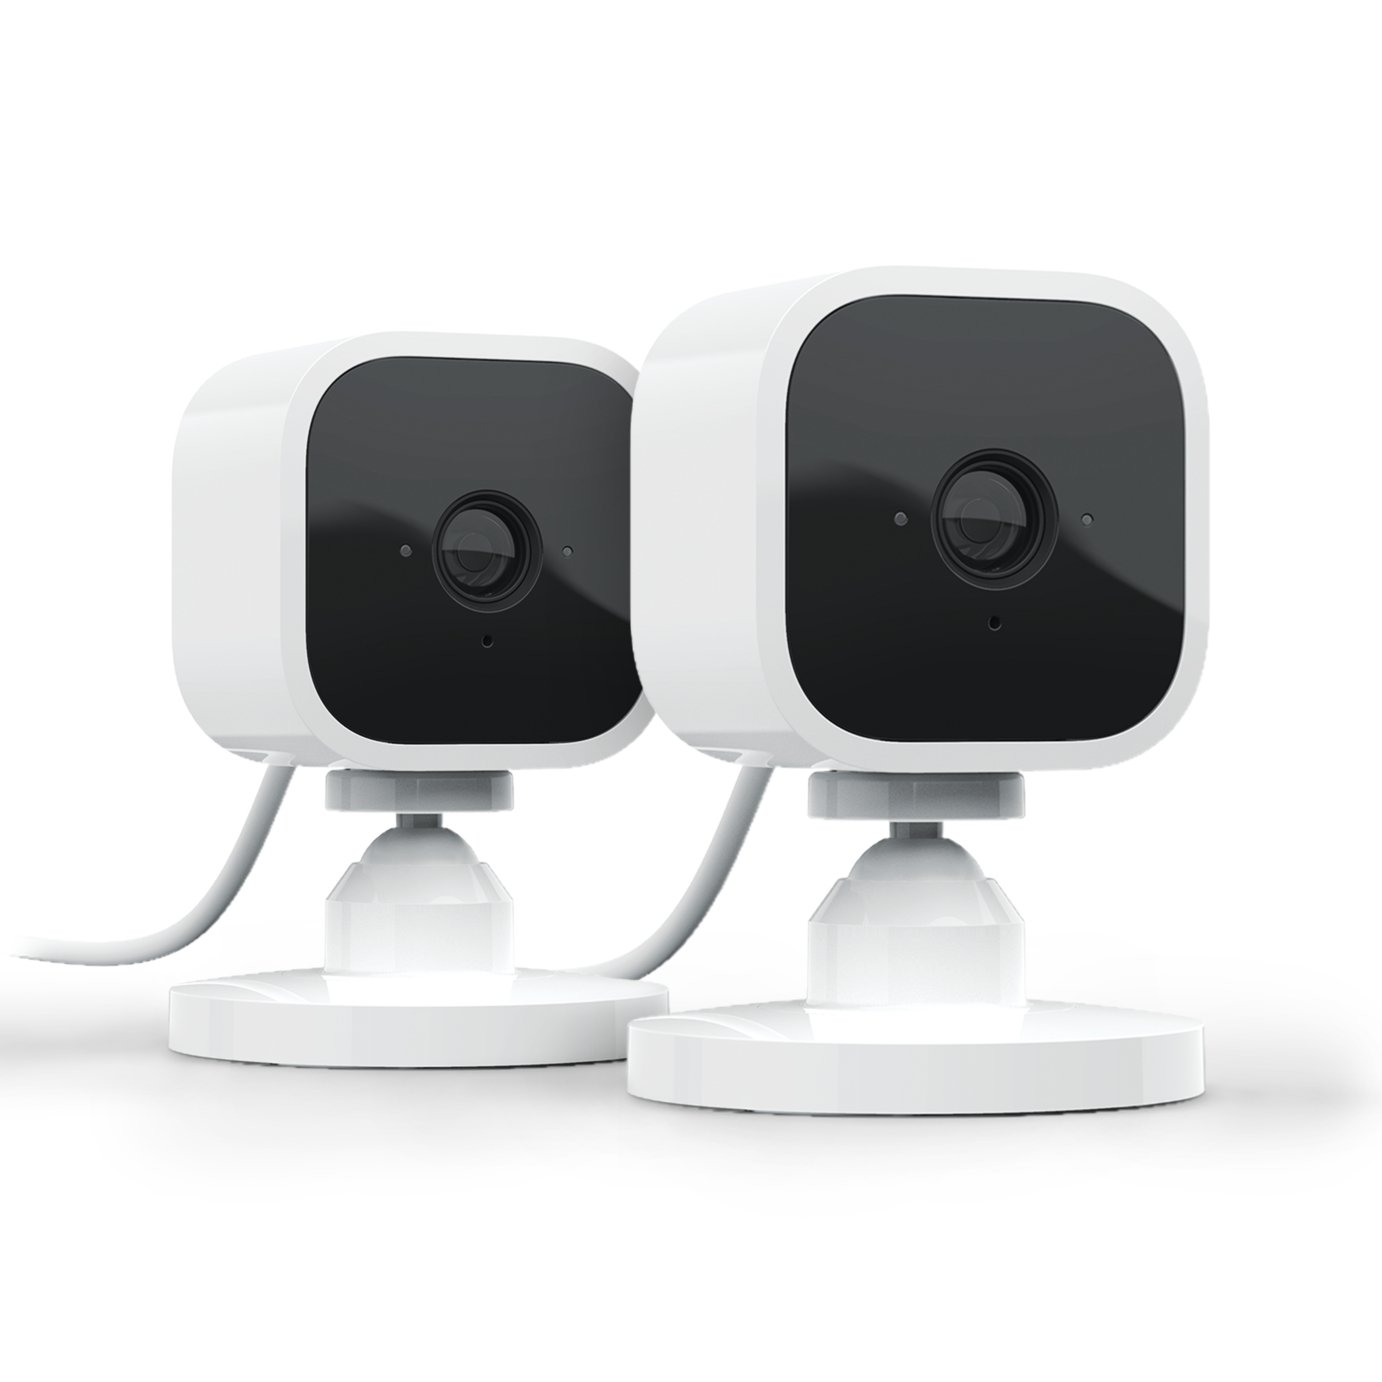 CCTV Cameras \u0026 Systems | Home Security 